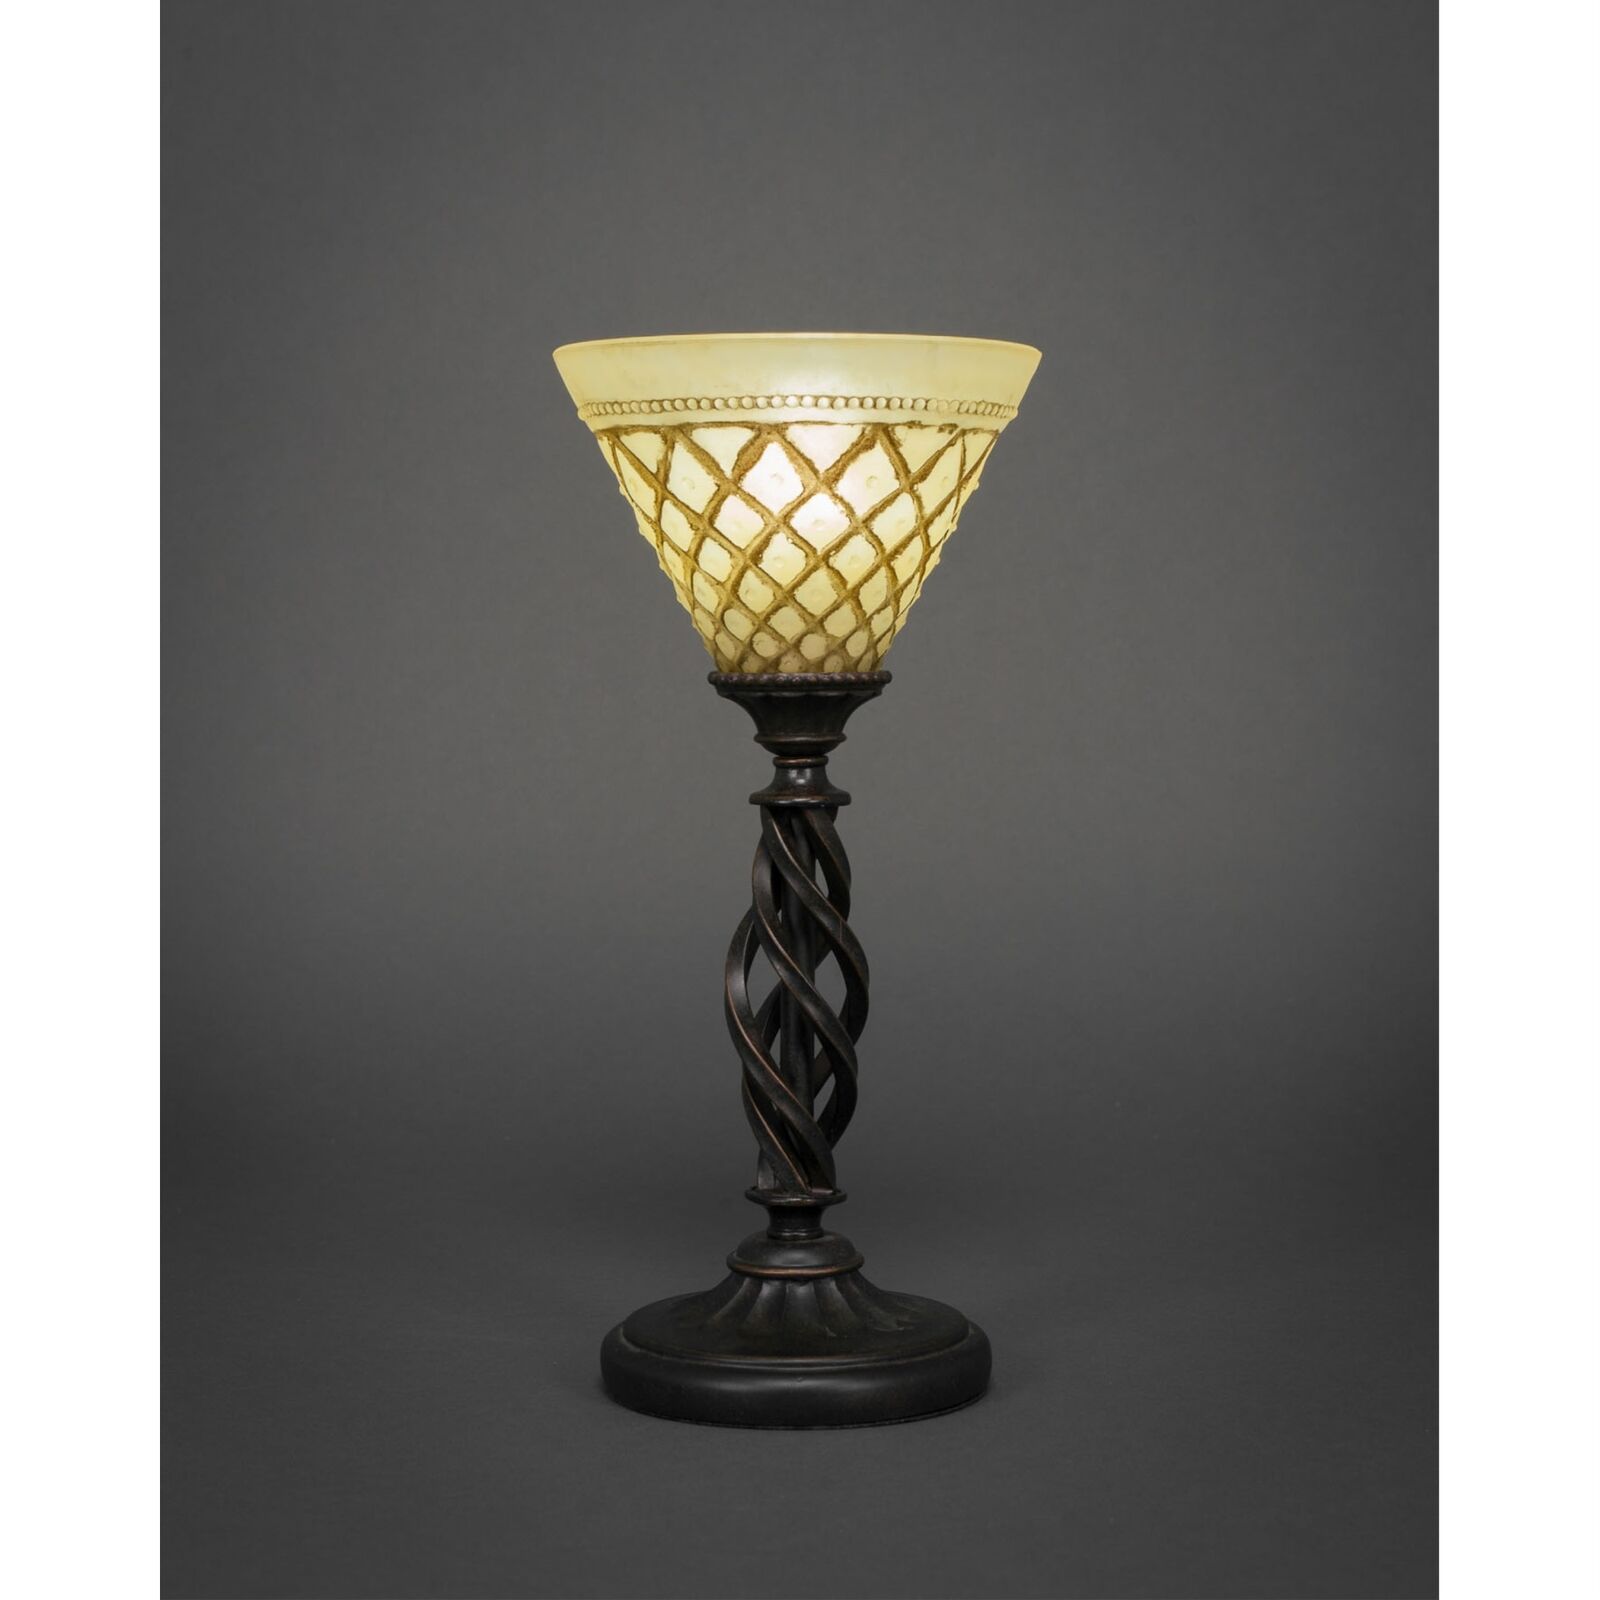 Elegant Mini Table Lamp Shown In Dark Granite Finish With 7